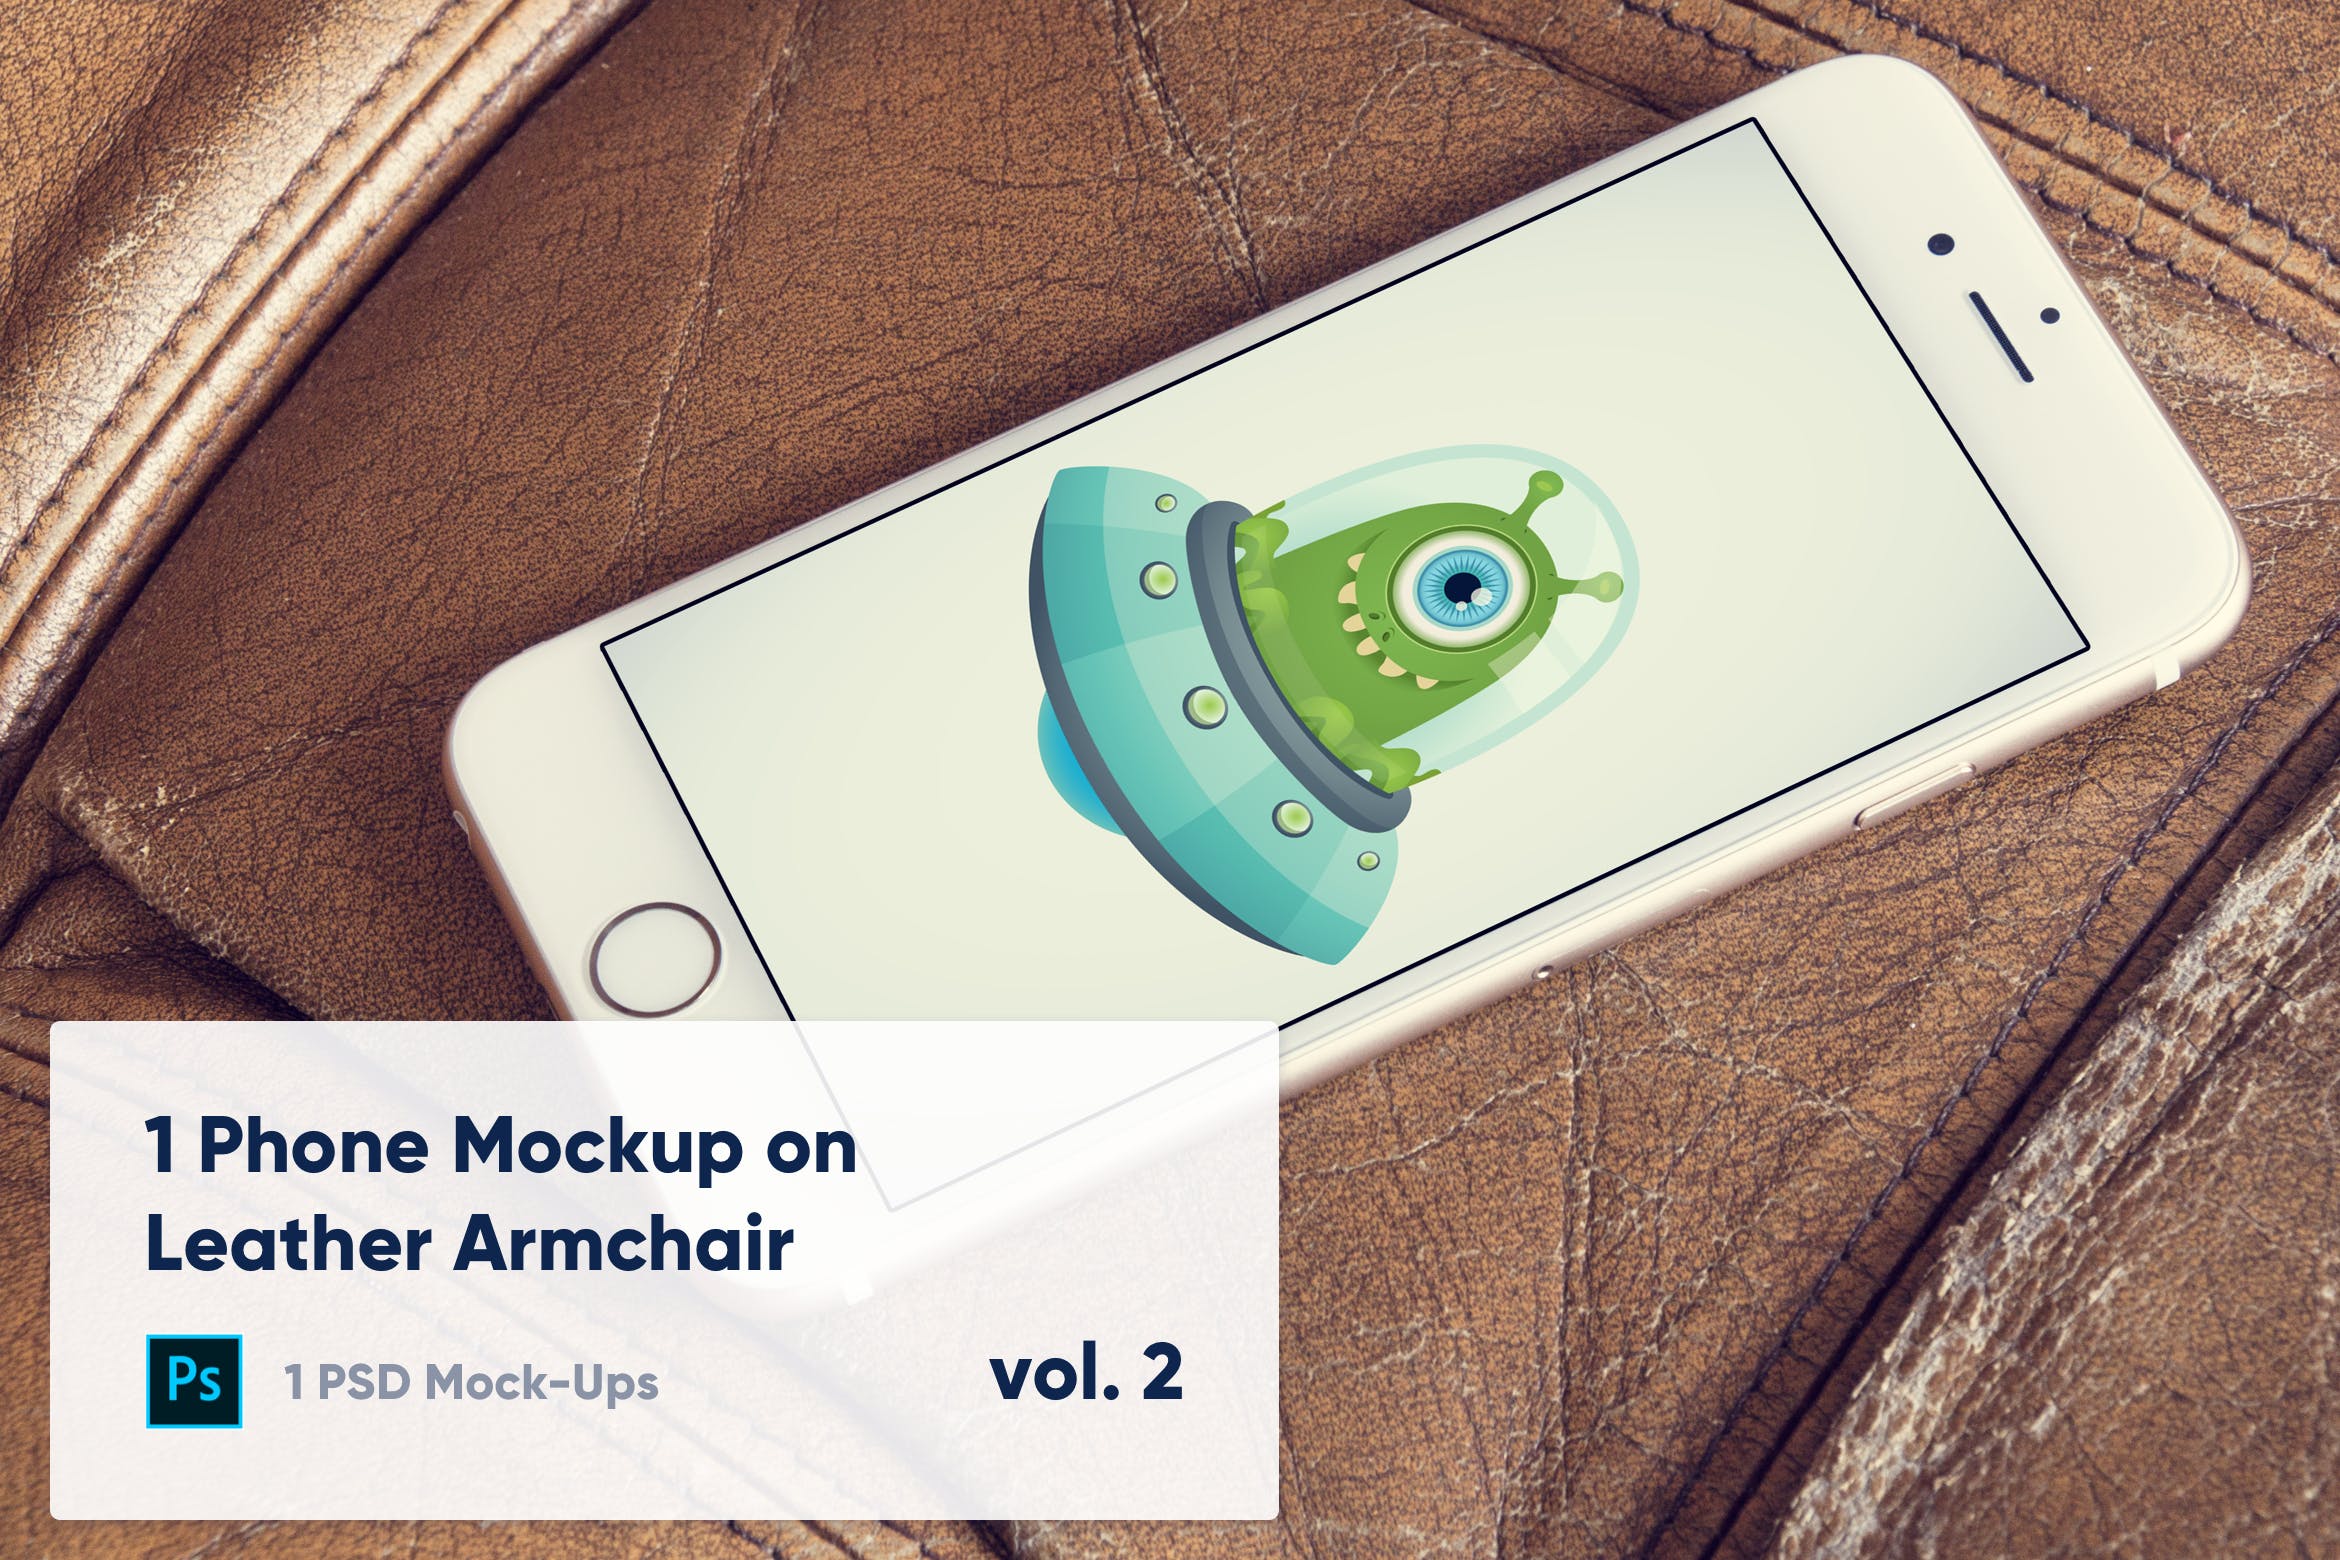 皮革扶手椅上iPhone手机UI设计演示大洋岛精选样机模板v1 1 Phone Mockup on Leather Armchair Vol. 1插图